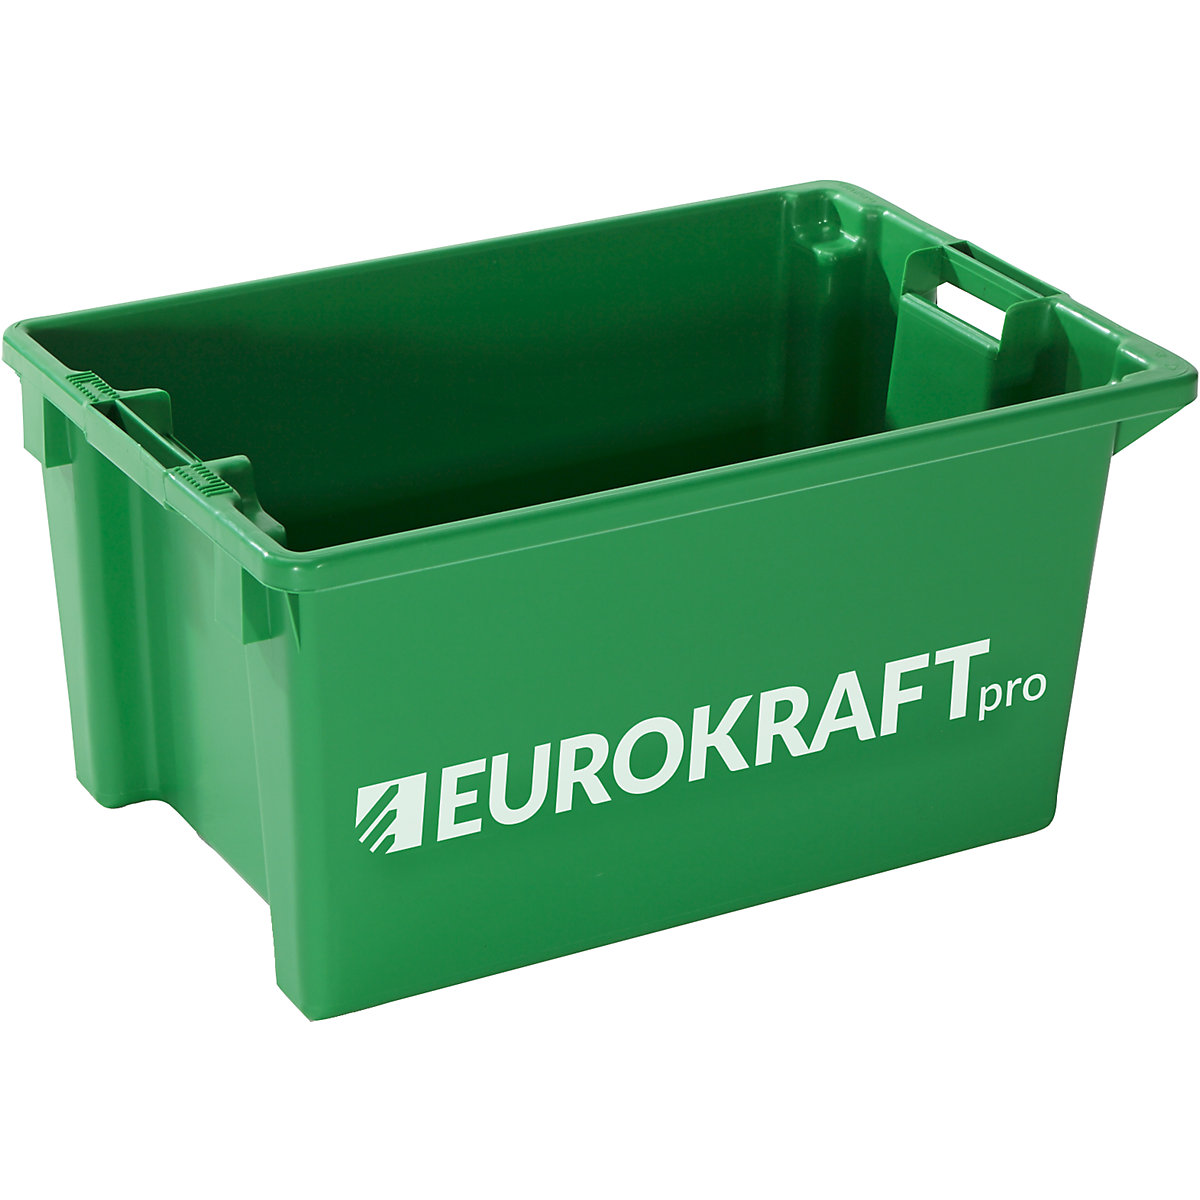 EUROKRAFTpro – Contenitori impilabili e girevoli, volume 50 l, conf. da 3 pezzi, verde